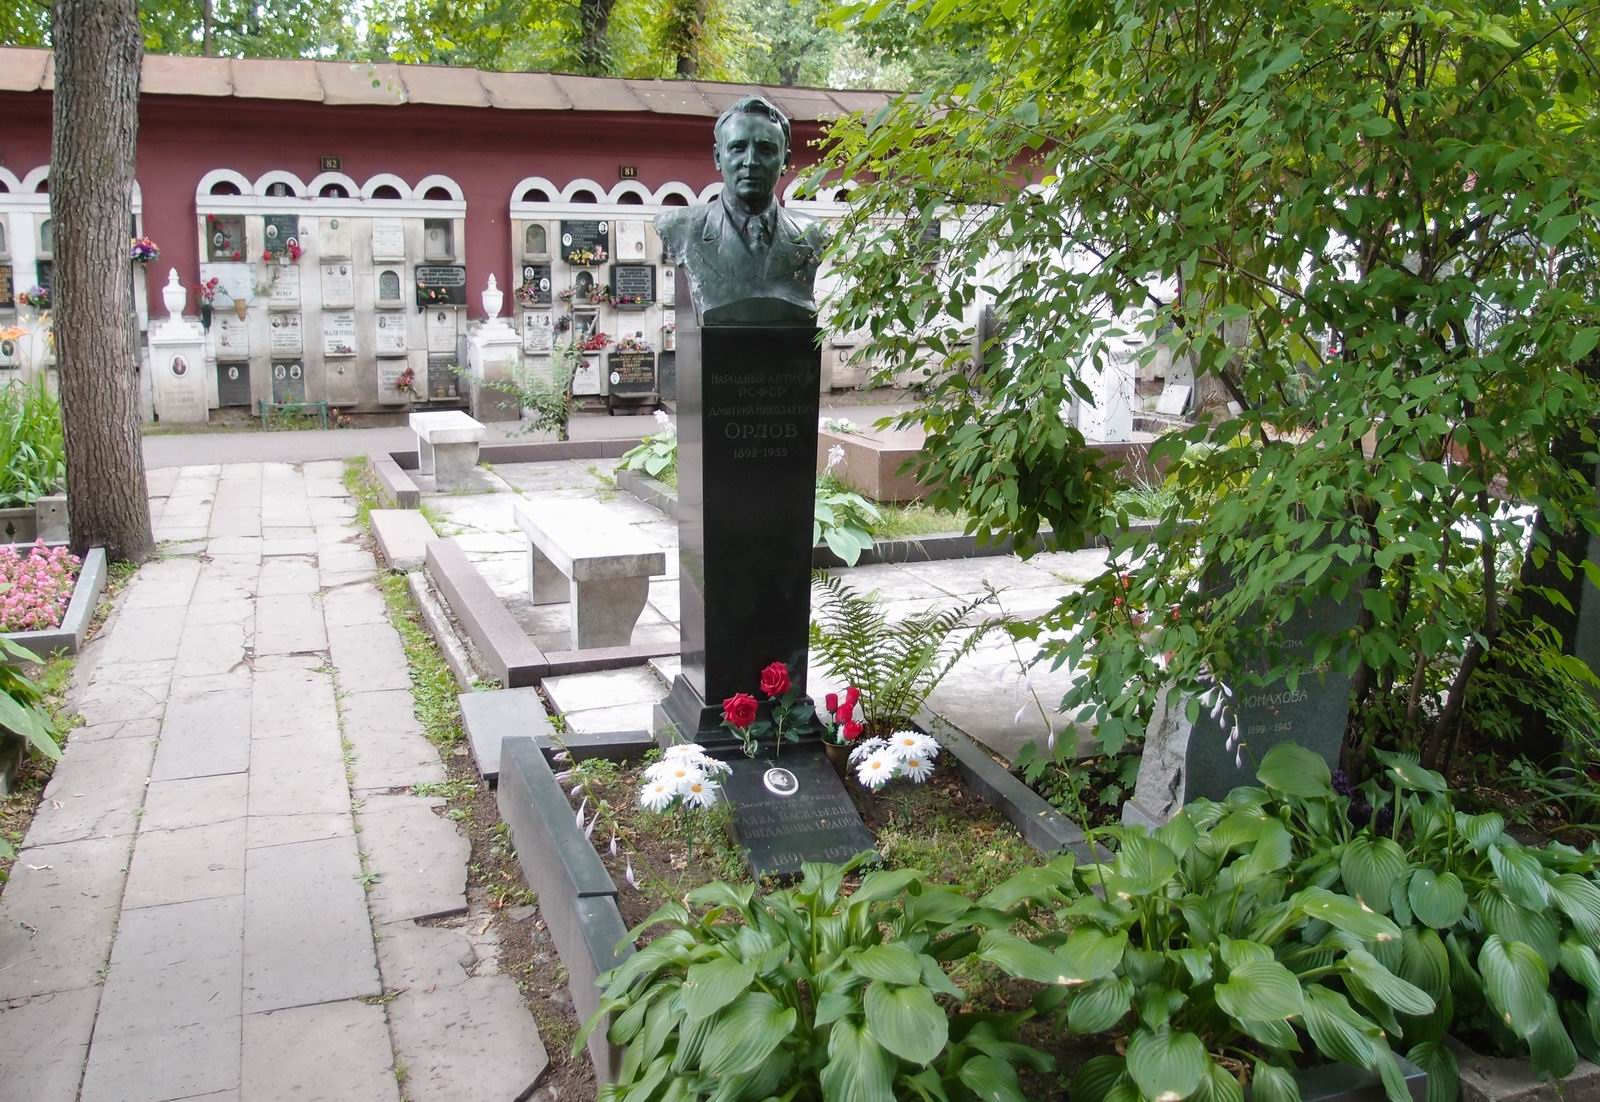 Памятник на могиле Орлова Д.Н. (1892–1955), на Новодевичьем кладбище (2–17а–11). Нажмите левую кнопку мыши чтобы увидеть фрагмент памятника.